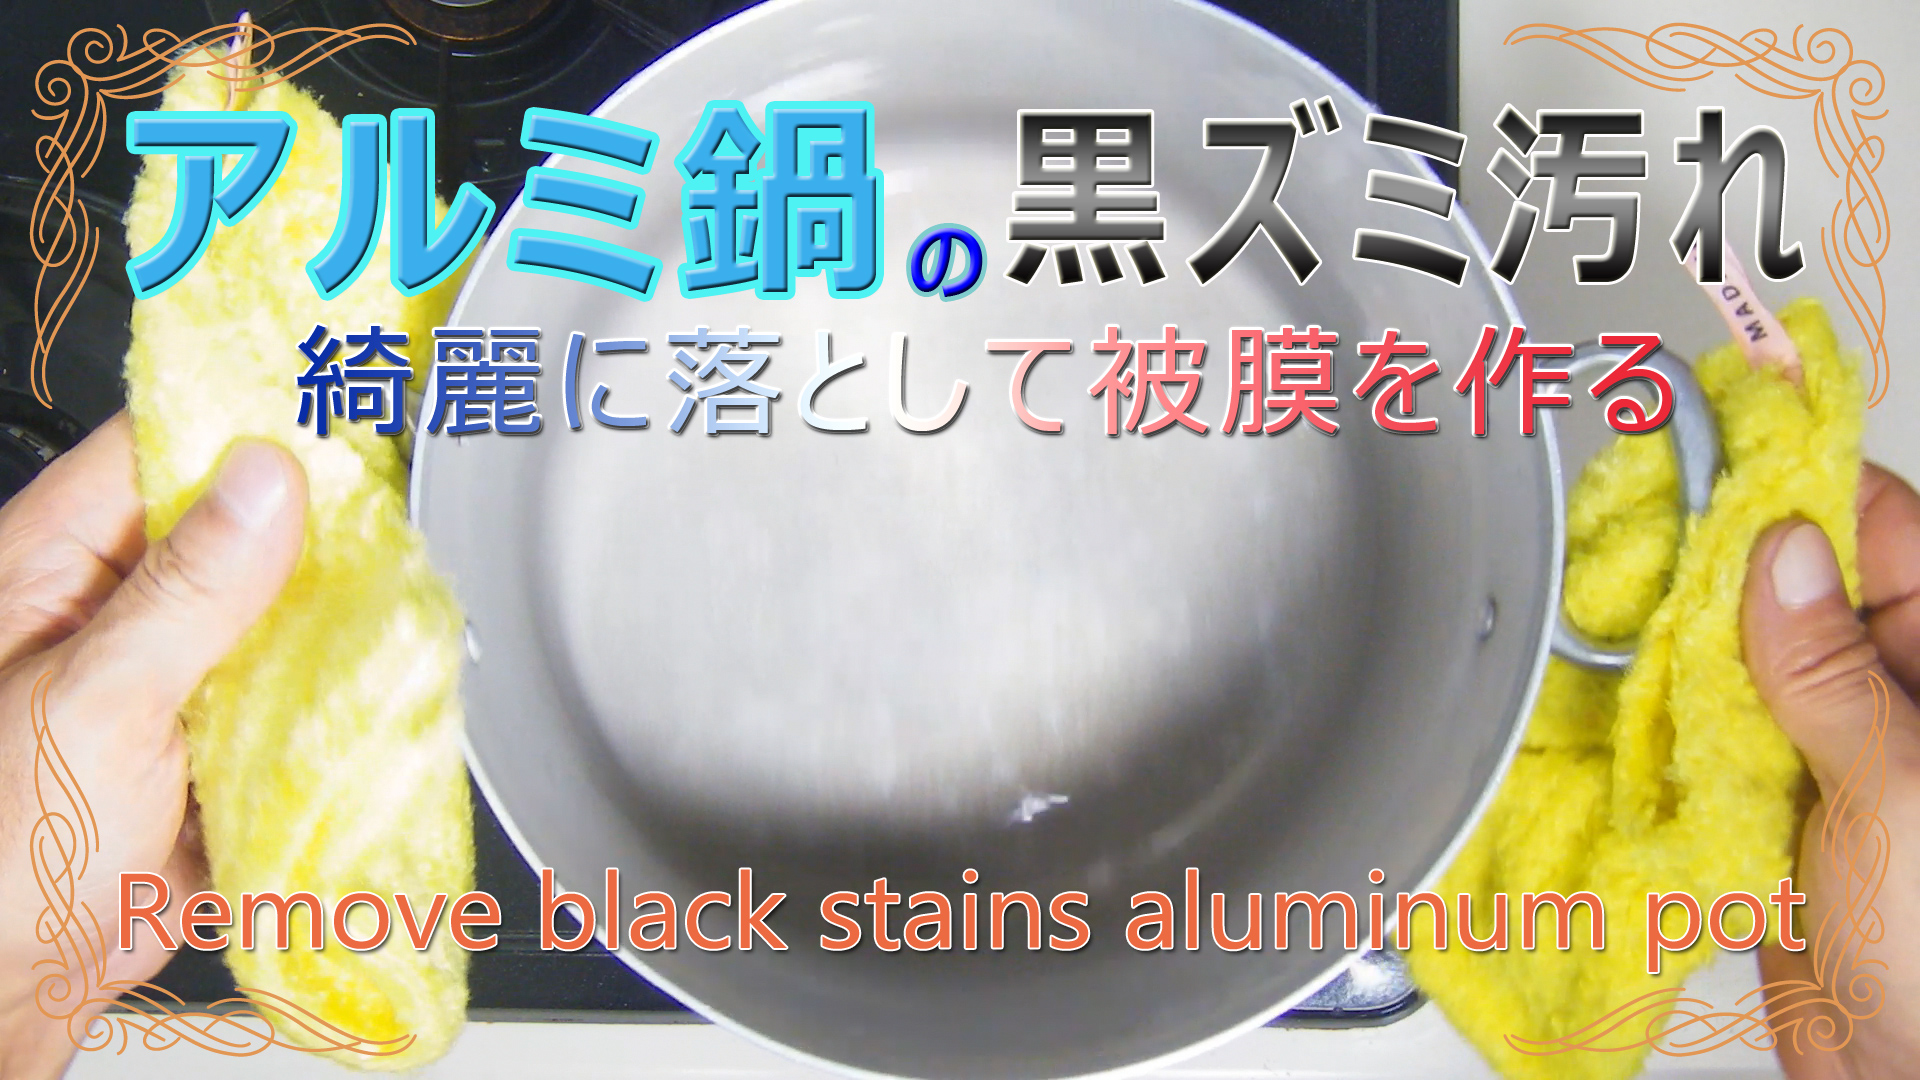 アルミ鍋の黒ズミ汚れを落とし被膜を作る方法 Remove black stains